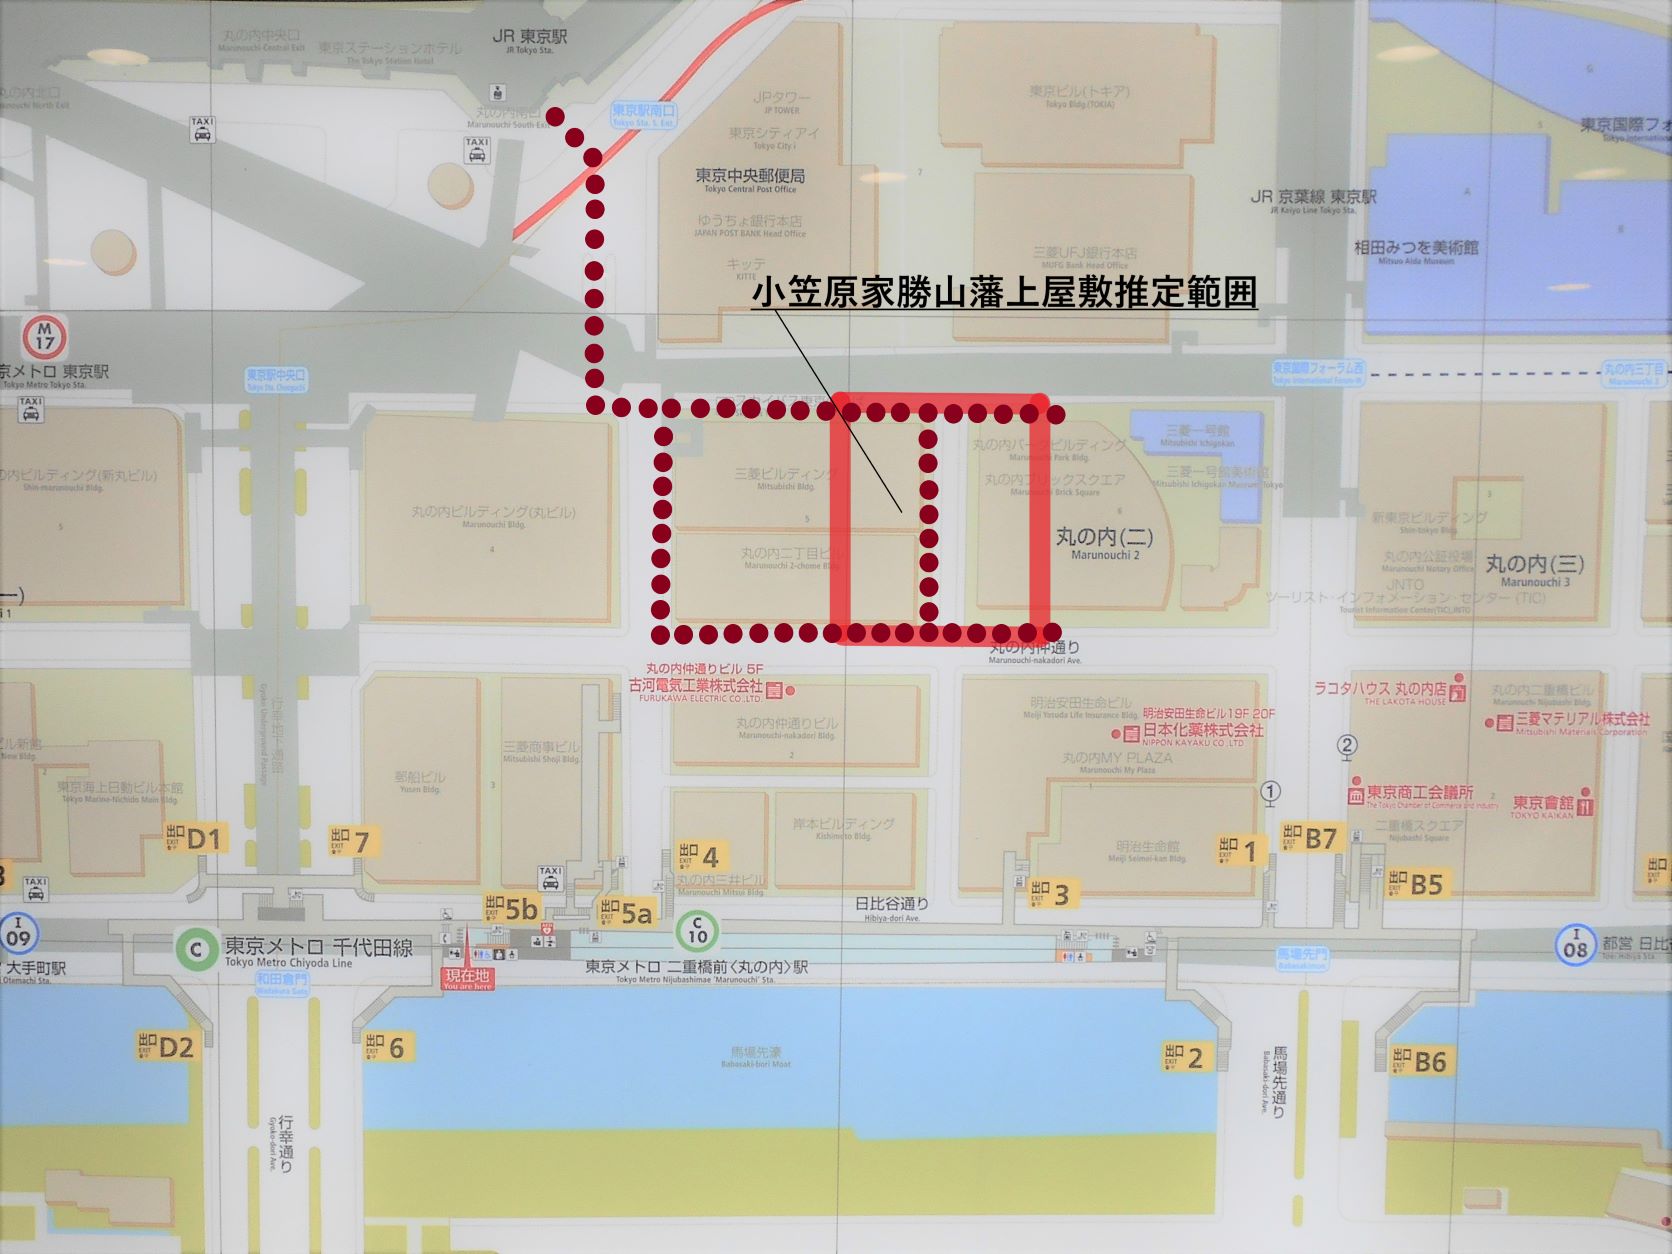 勝山藩上屋敷跡散策コース図ベースマップ の画像。